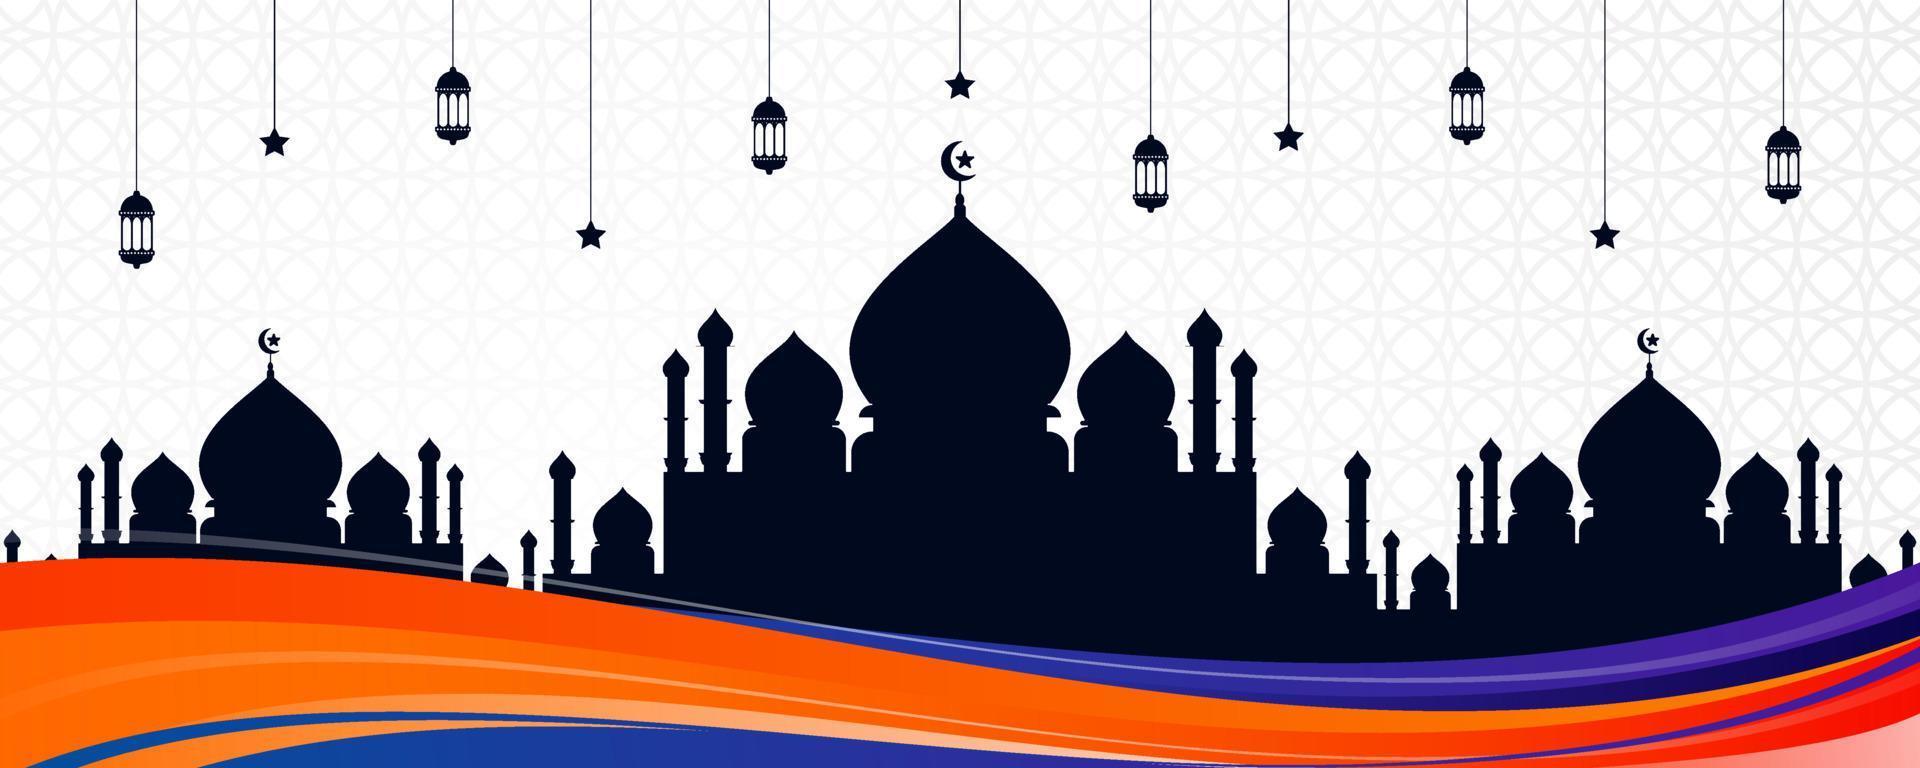 islamisches grußkartenbanner mit buntem wellendesign, moscheensilhouette und arabischen ornamenten. schöner eid al fitr hintergrund mit hängenden laternen, sternen und bunter abstrakter welle vektor